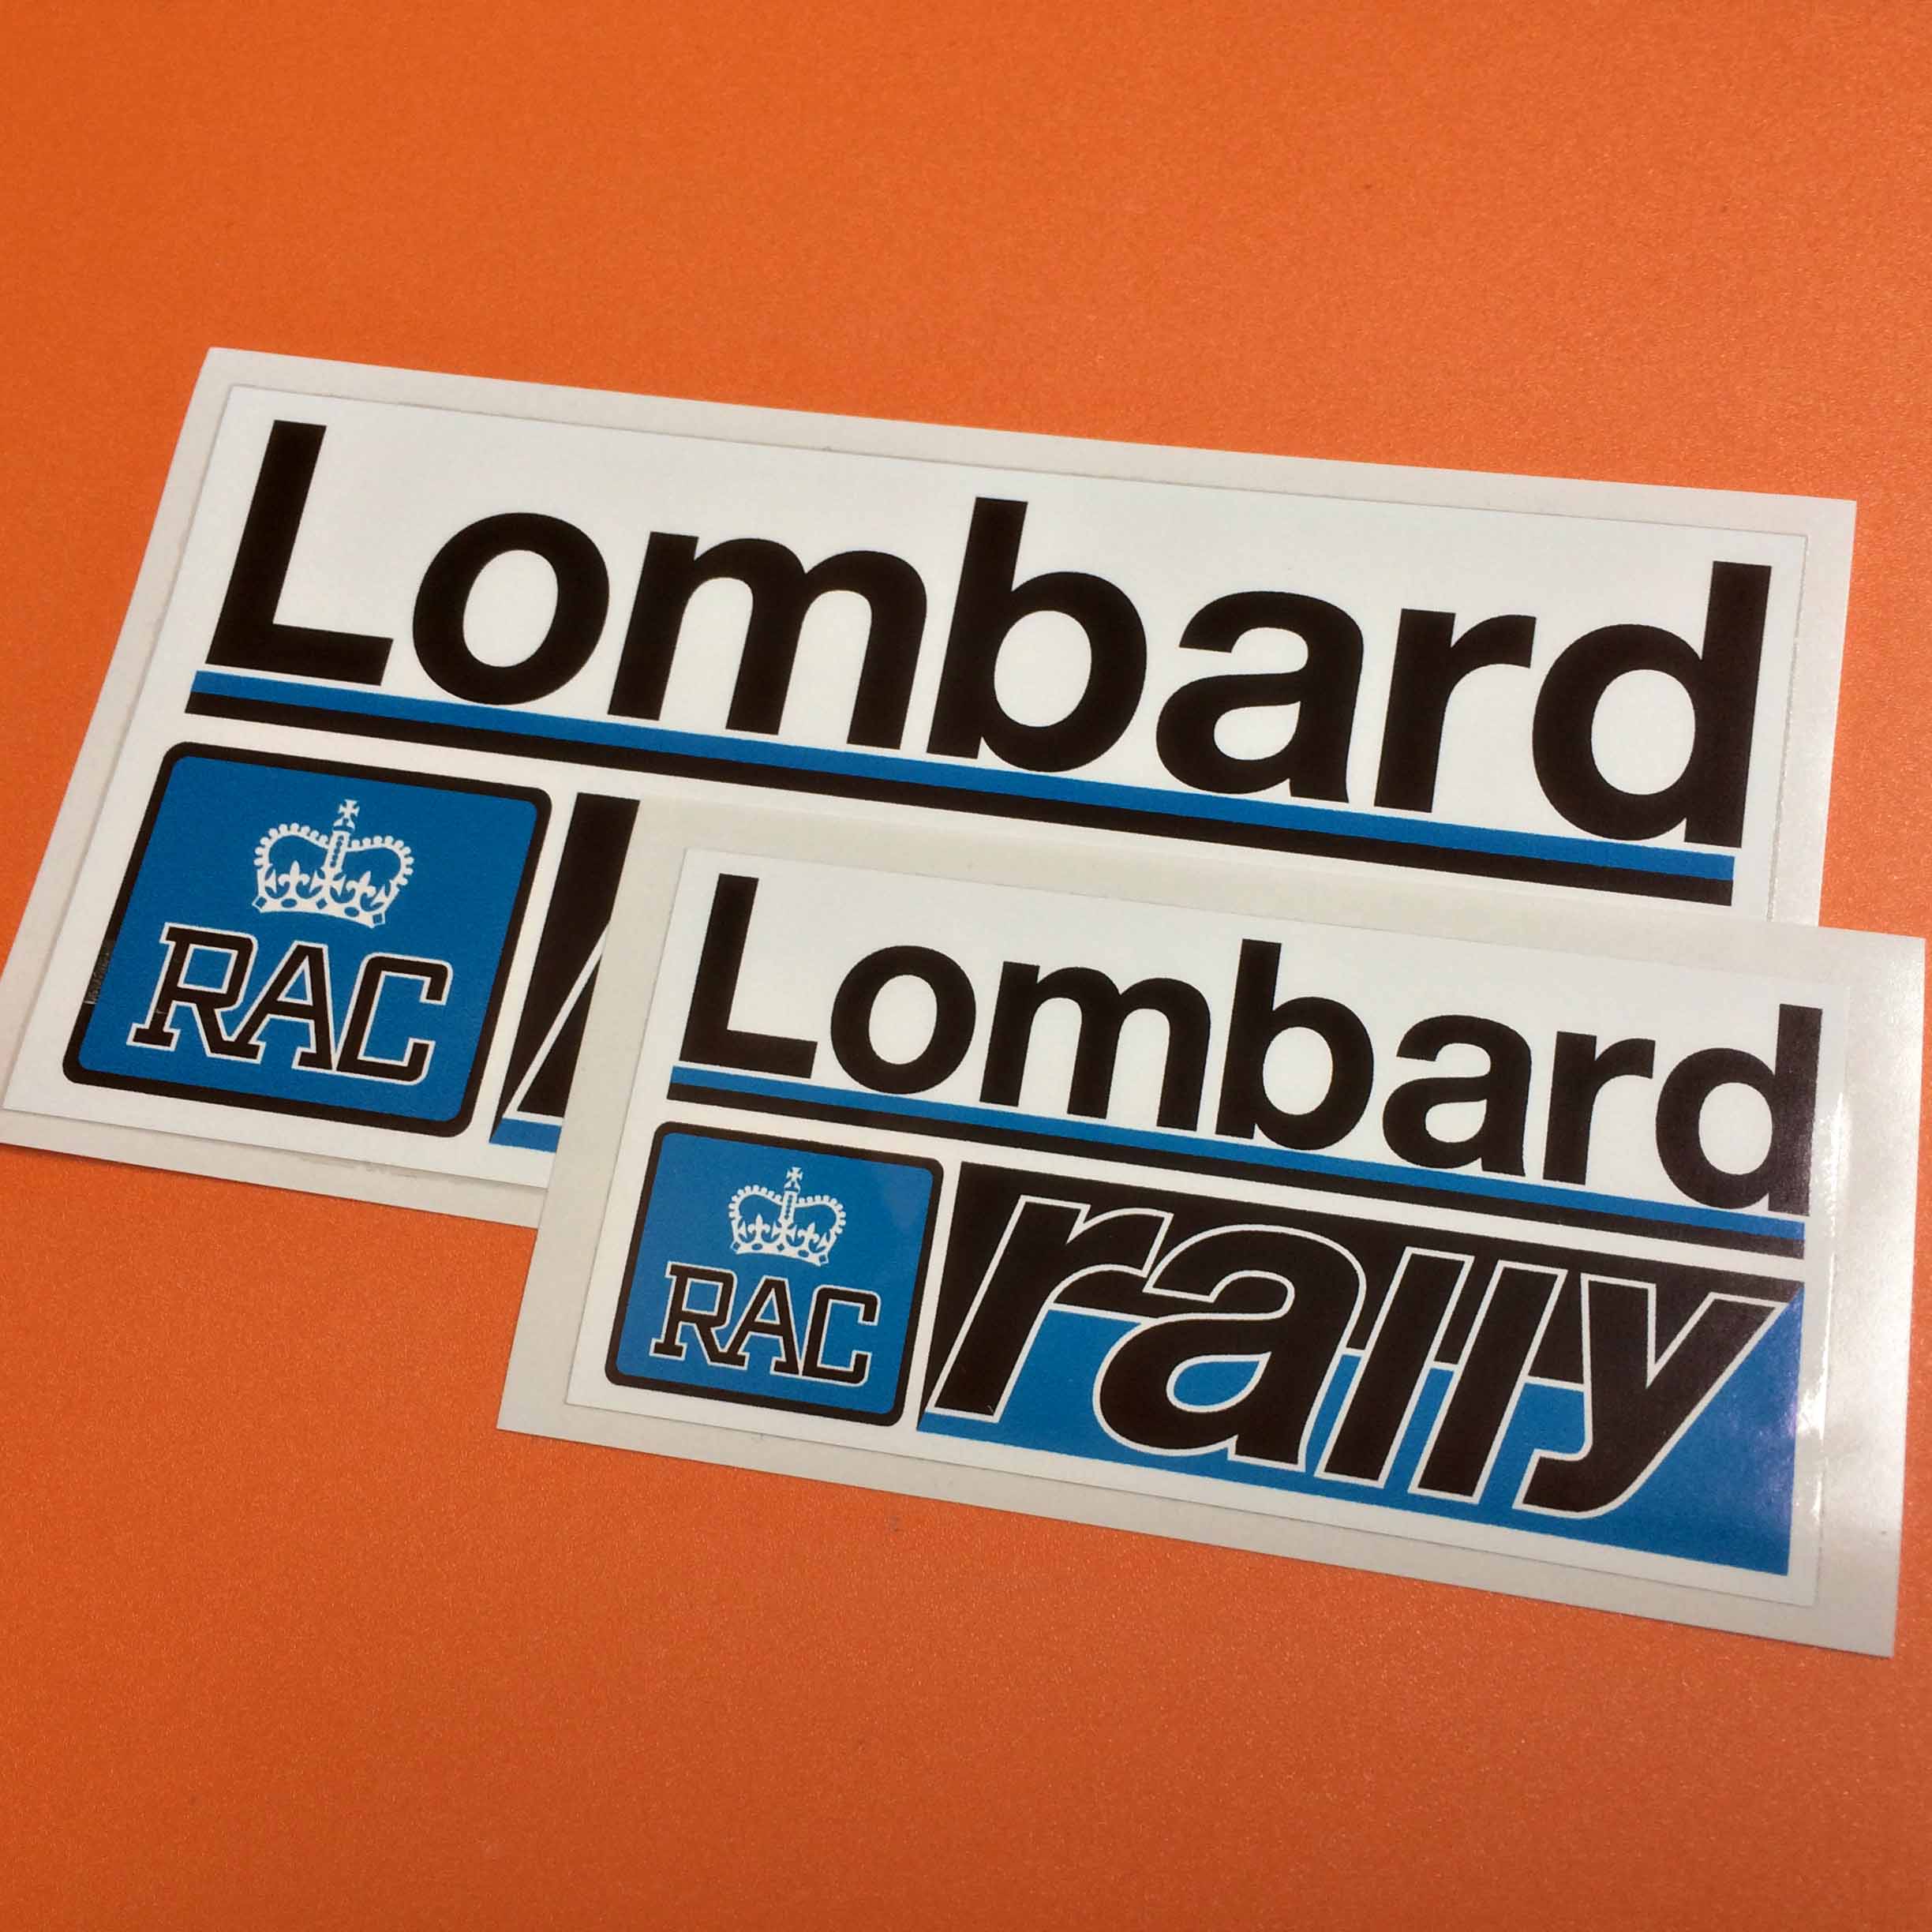 LOMBARD Lombard Rac Rally ' Crédit pour Voitures' Classique Vintage Groupe B Autocollant 